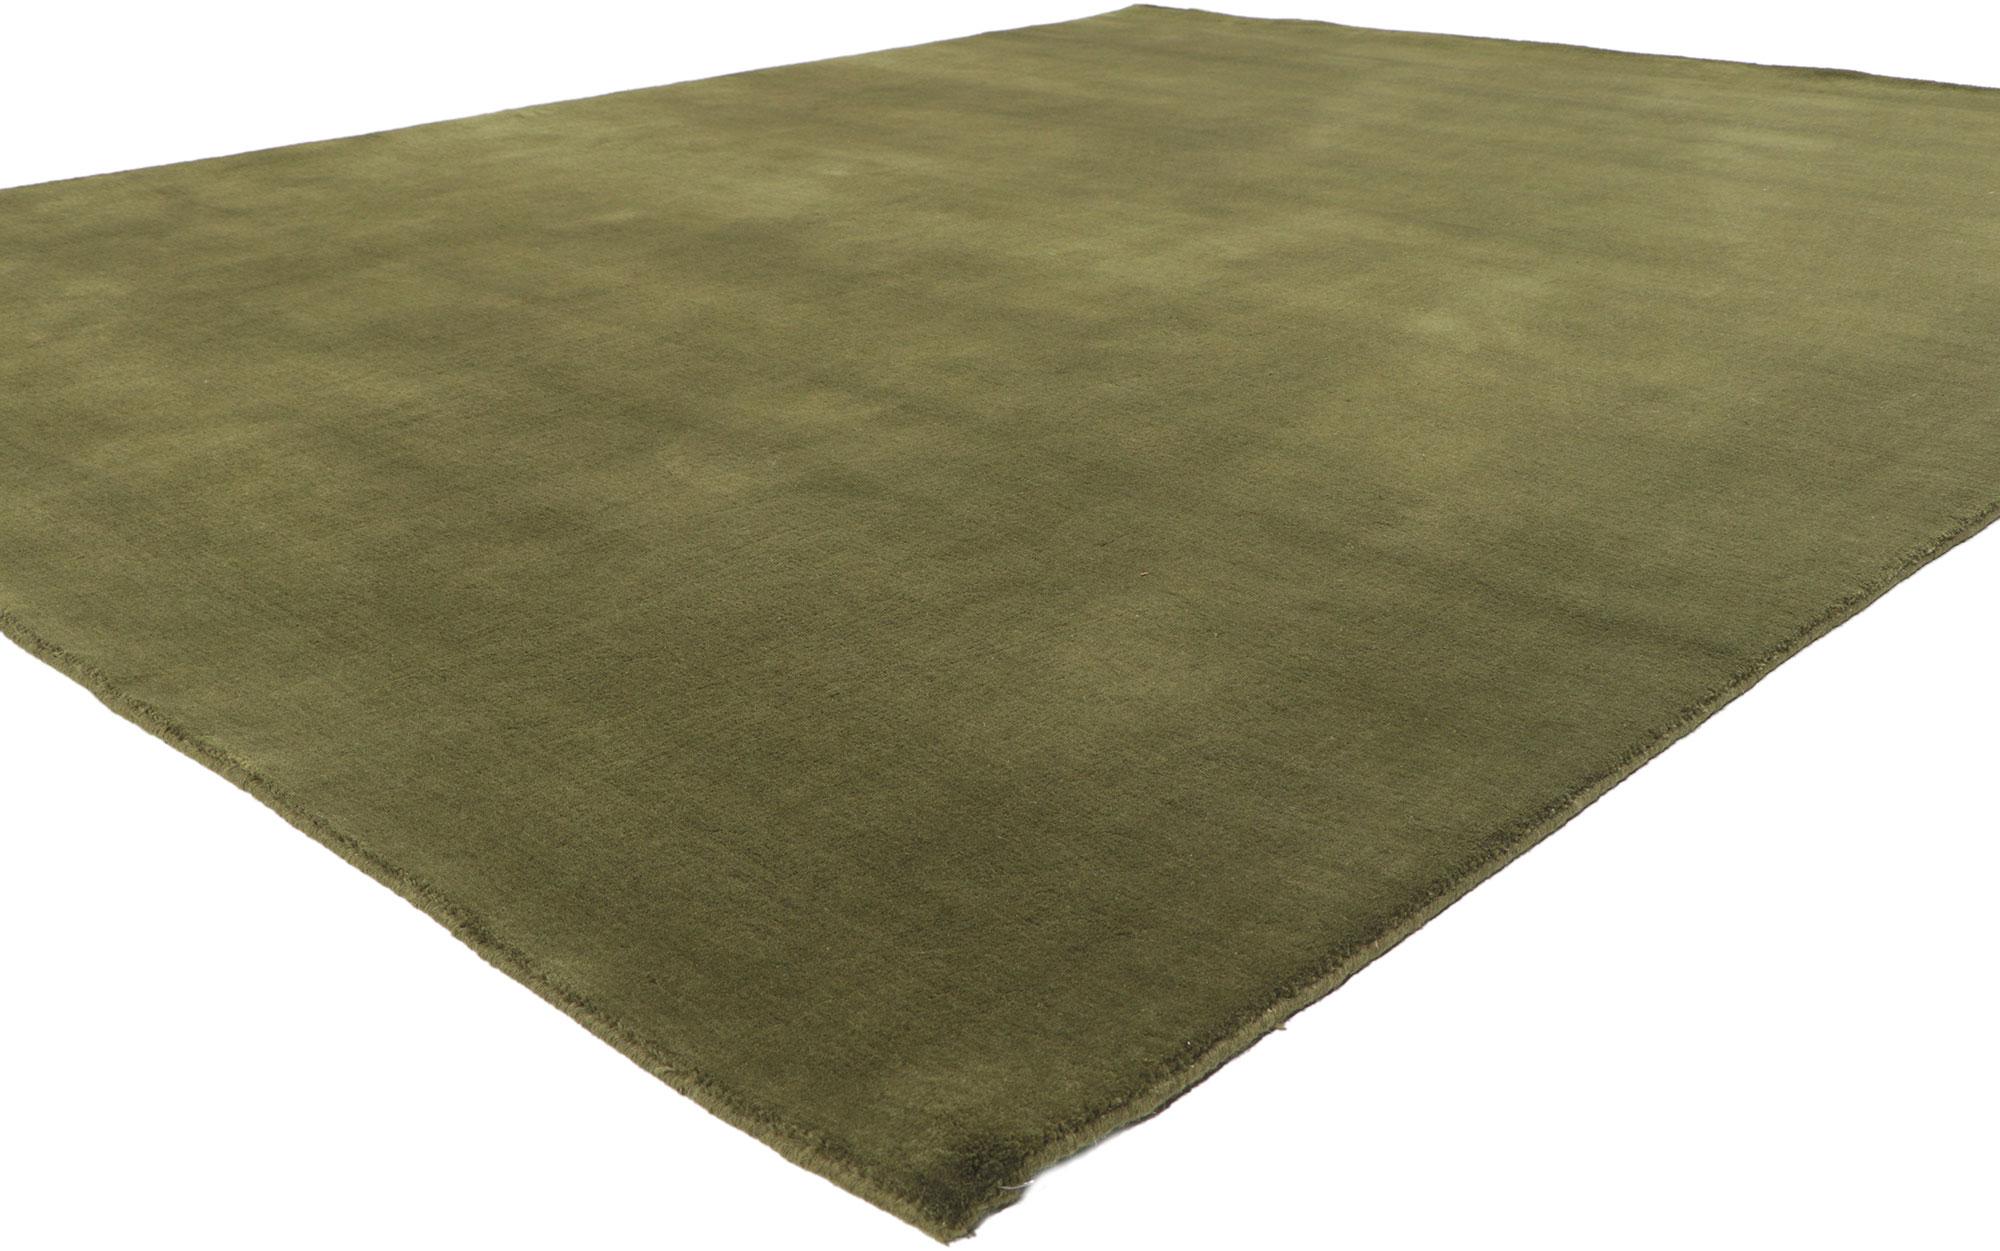 30928 New Moss-Olive Grün Modern Rug, 07'10 x 09'10. Dieser moderne Teppich, der Biophilie mit dezenter Ornamentik verbindet, ist eine fesselnde Vision gewebter Schönheit. Die üppige Textur und die erdgrüne Farbgebung, die in dieses Stück eingewebt